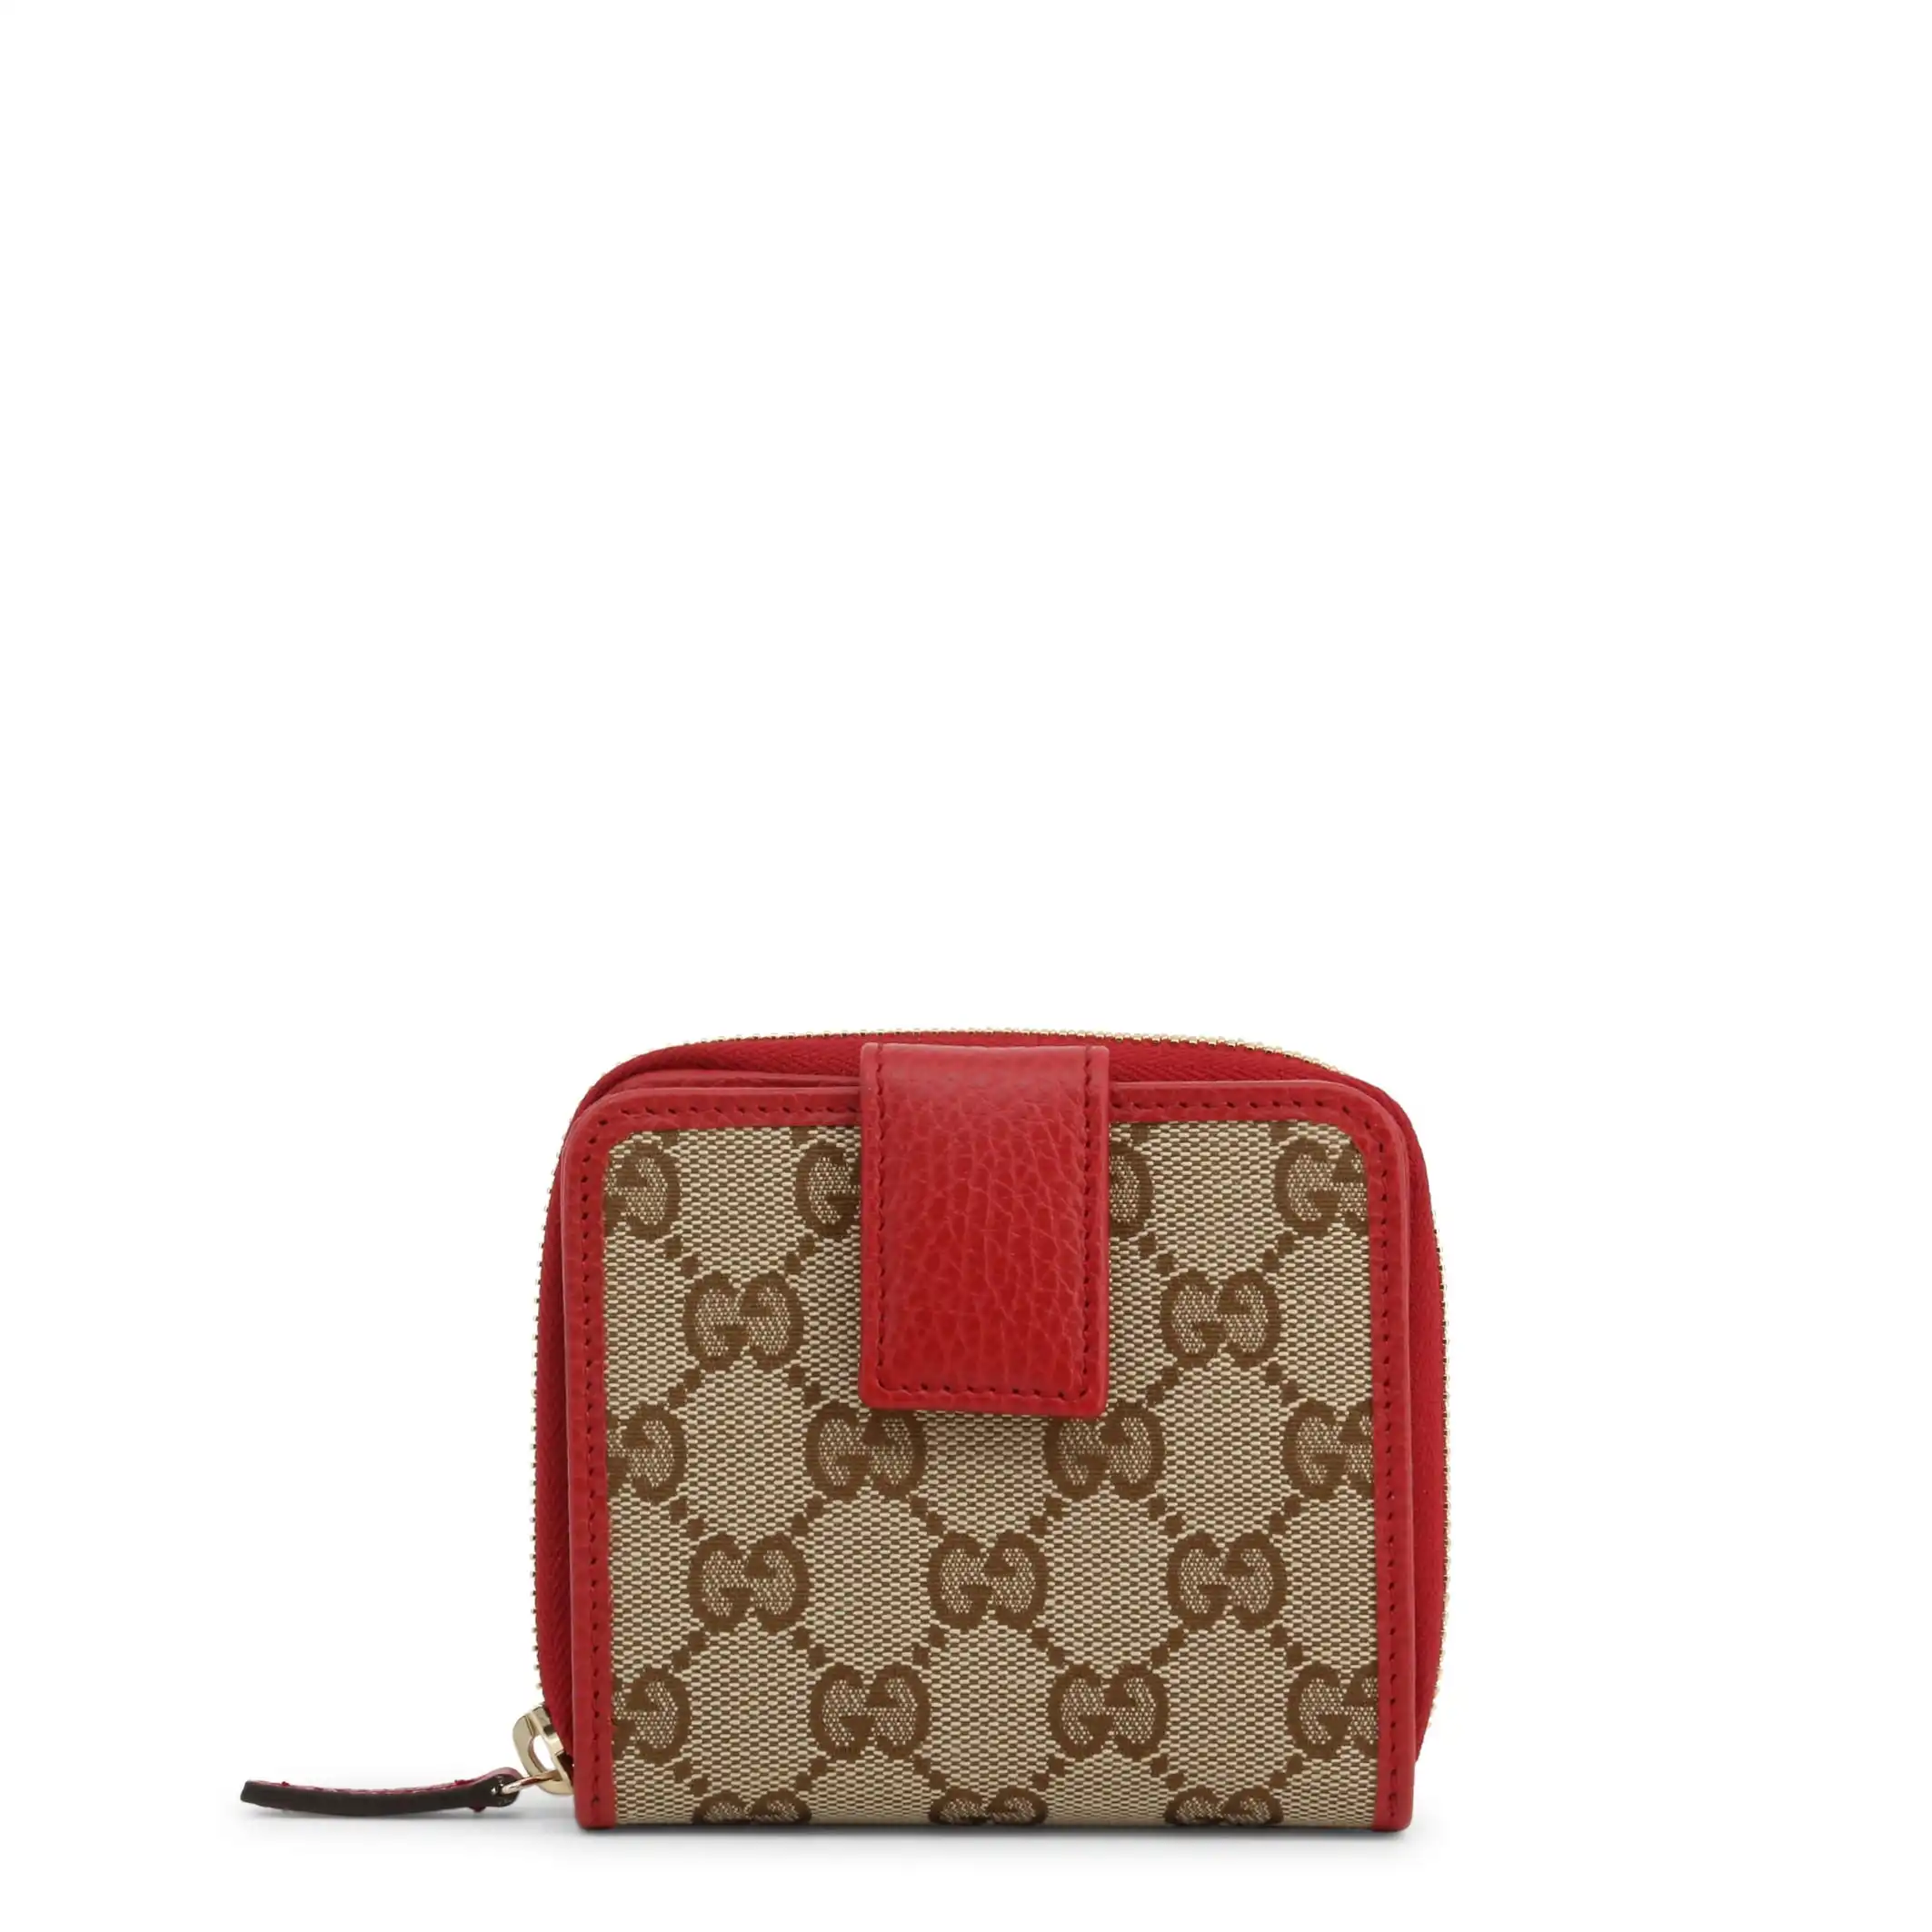 Gucci Women's Wallet